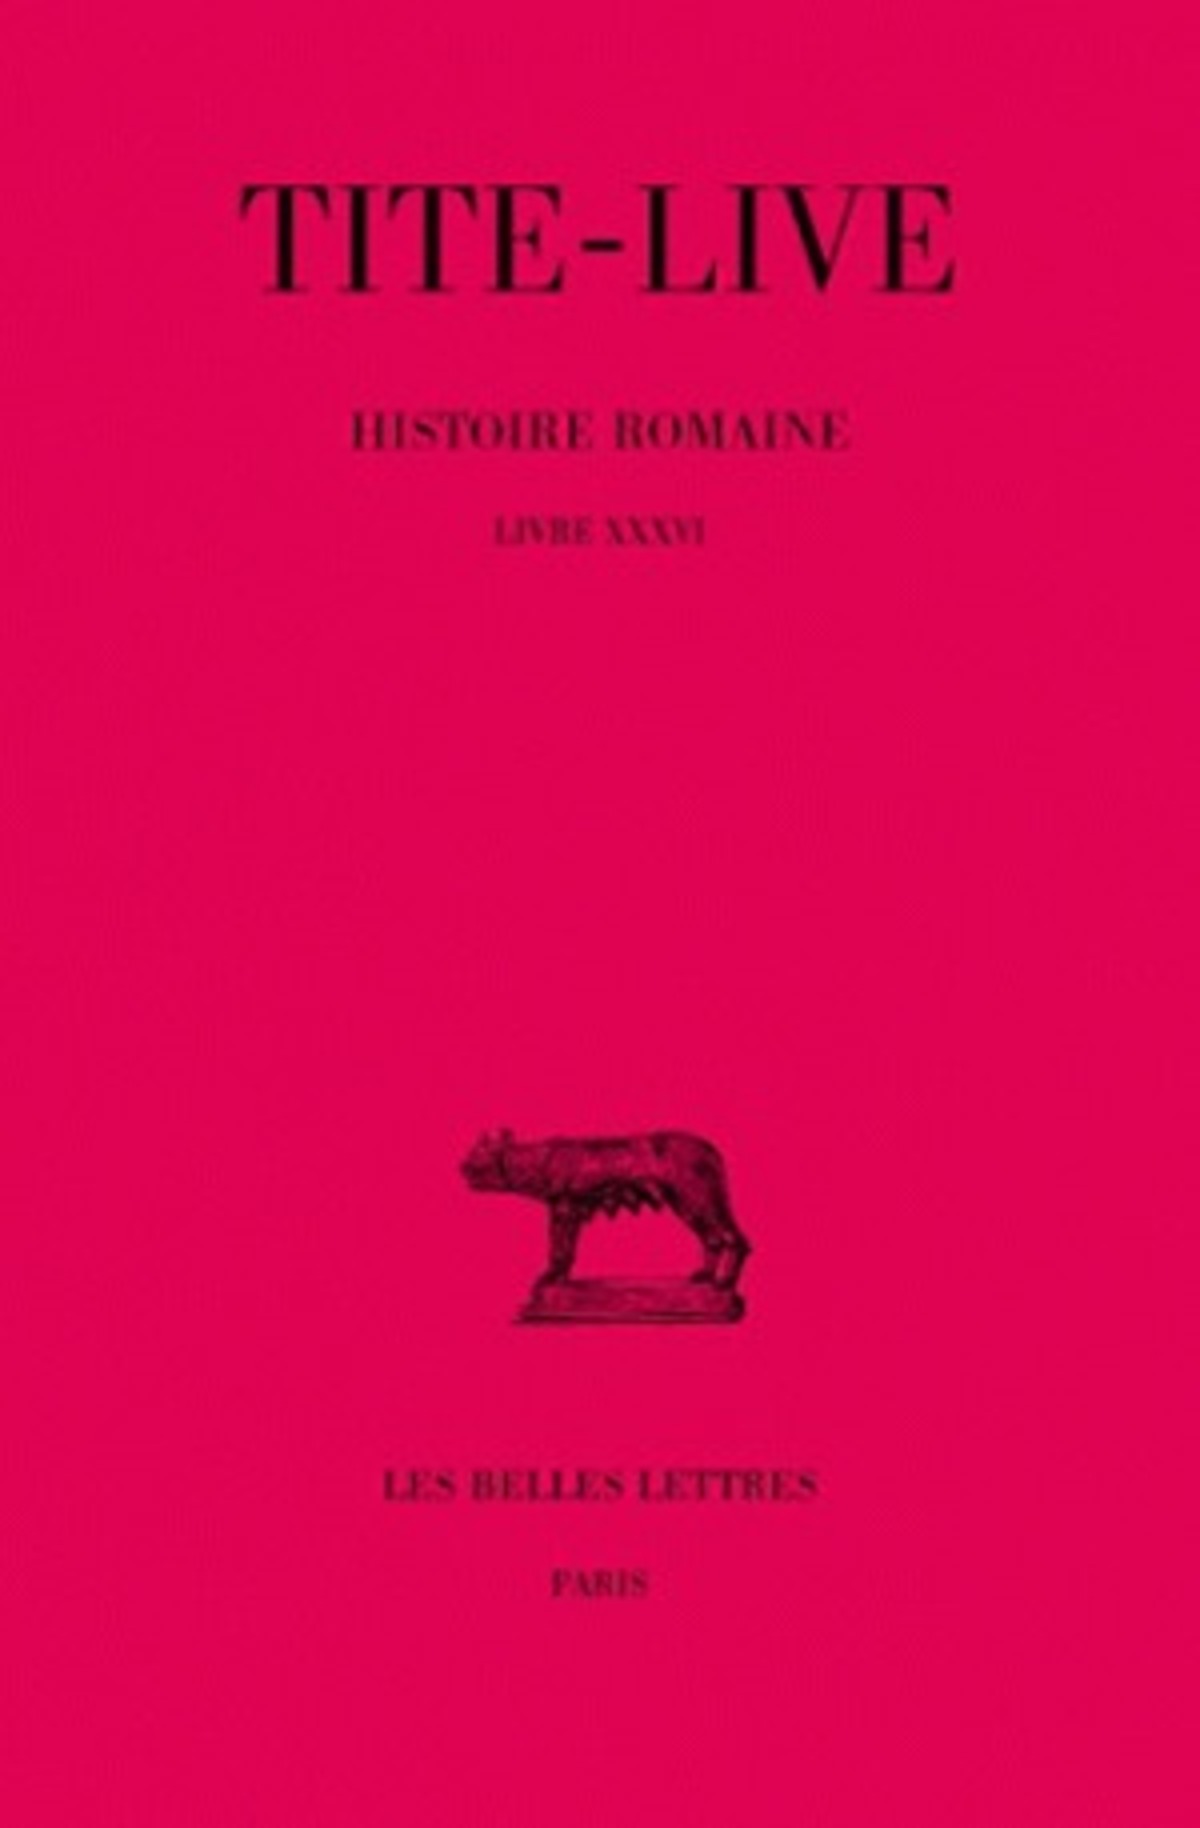 Histoire romaine. Tome XXVI : Livre XXXVI